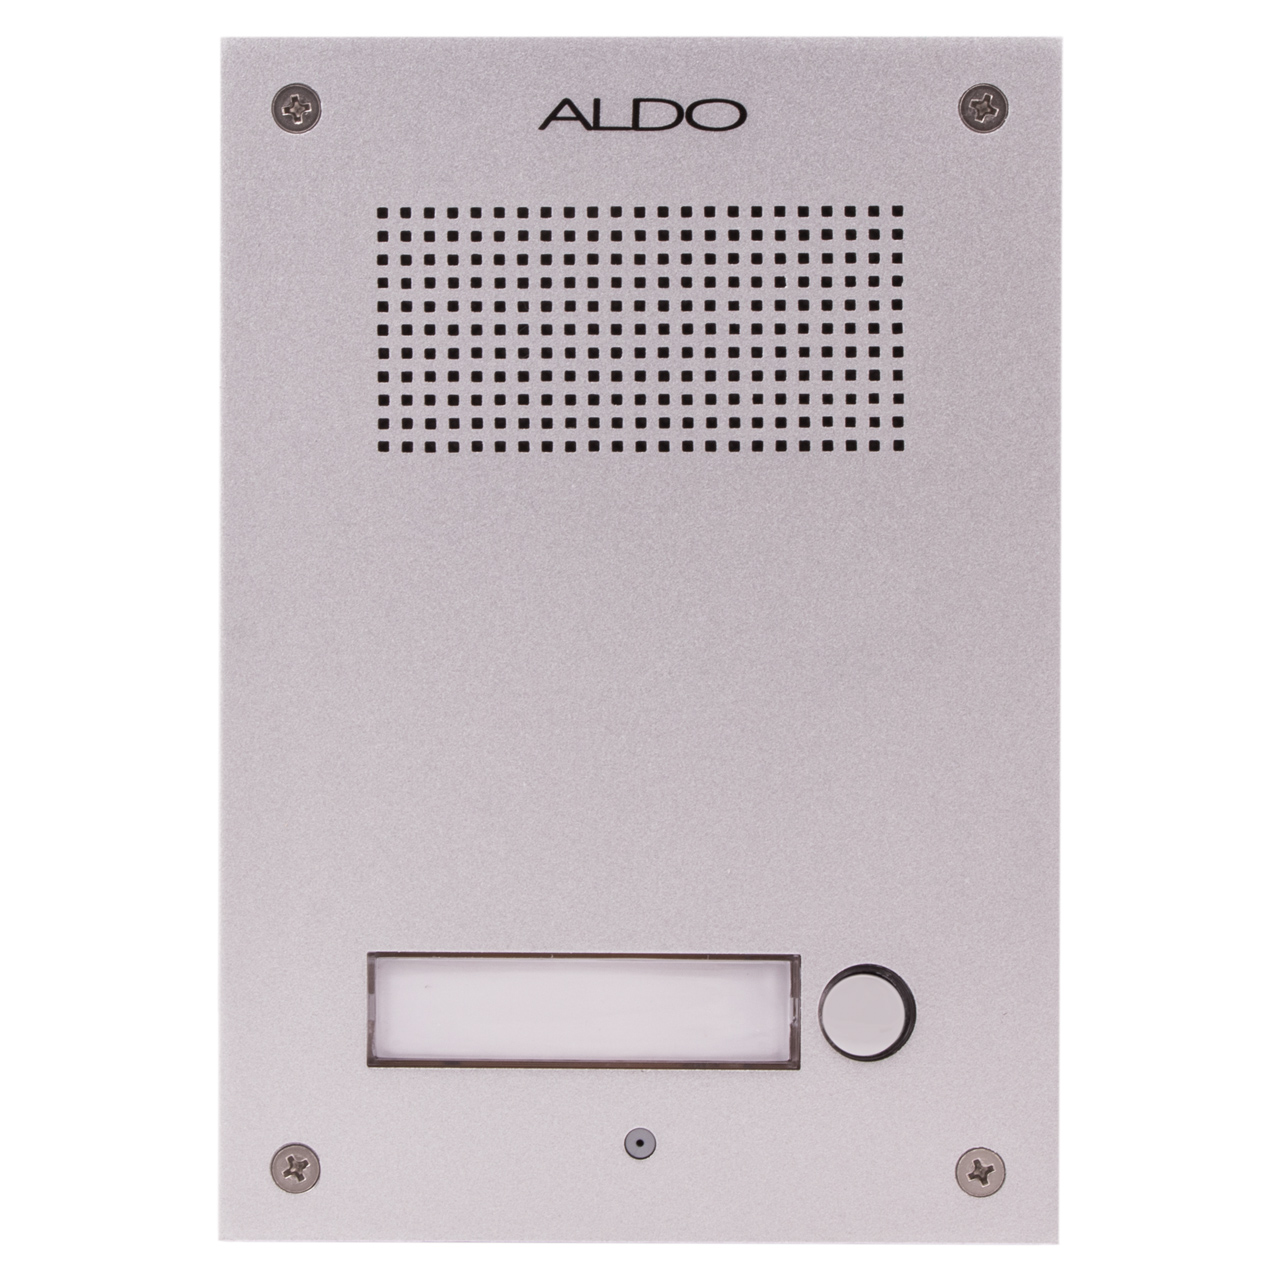 نکته خرید - قیمت روز پنل درب بازکن صوتی آلدو مدل AL-1UD خرید